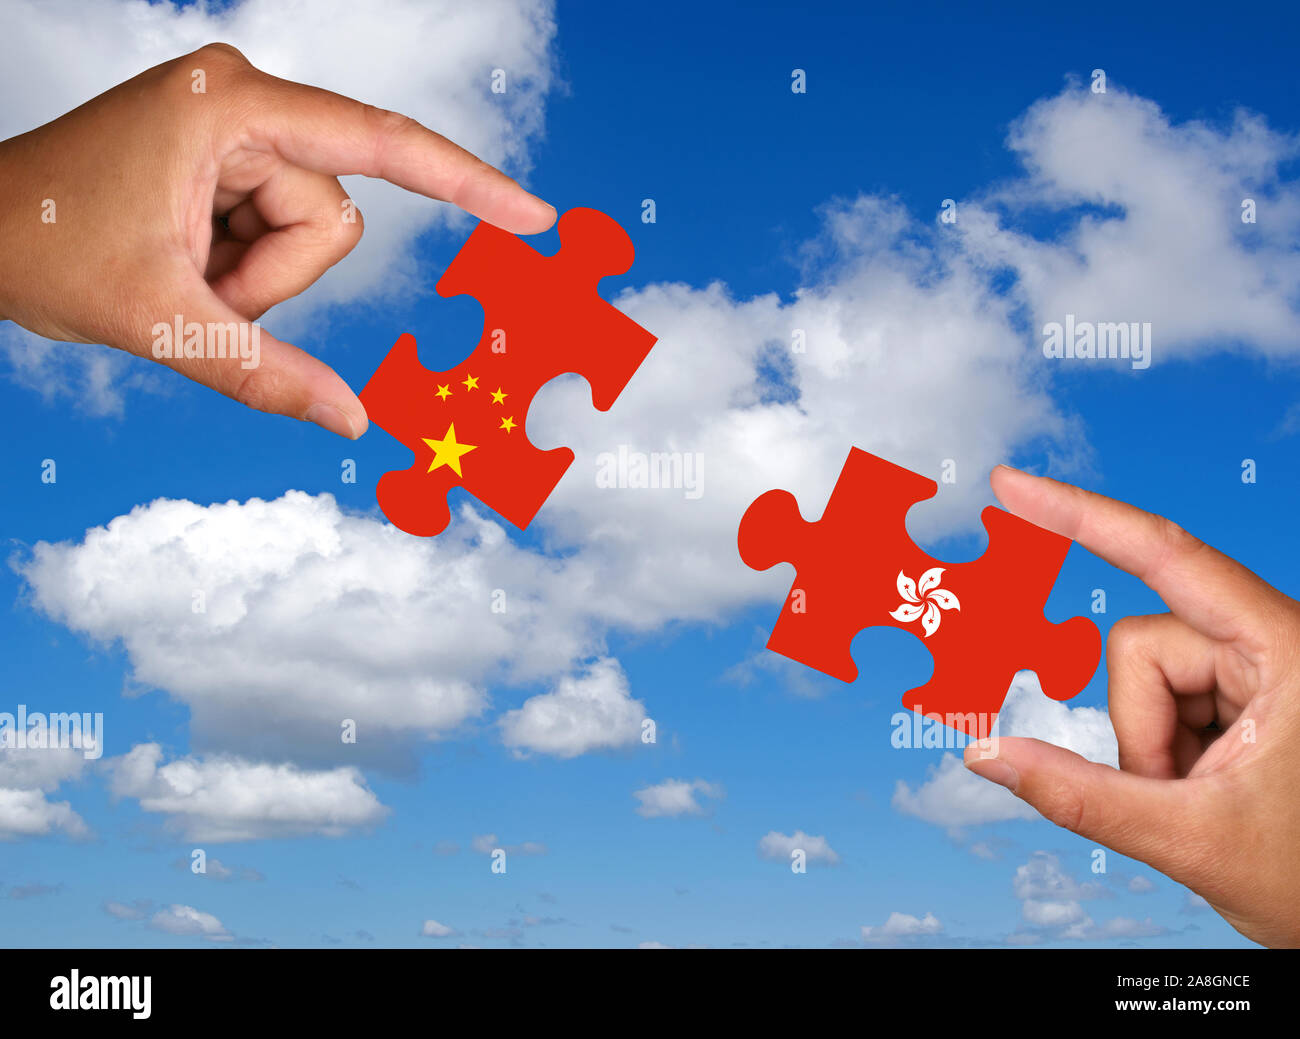 Zwei Hände halten jeweils ein Puzzle Teil, Silhouette, Konfrontation, Annäherung, Krieg, Handelskrieg, Wirtschaftskrieg, Atomvertrag, Grossmächte, Chi Stock Photo